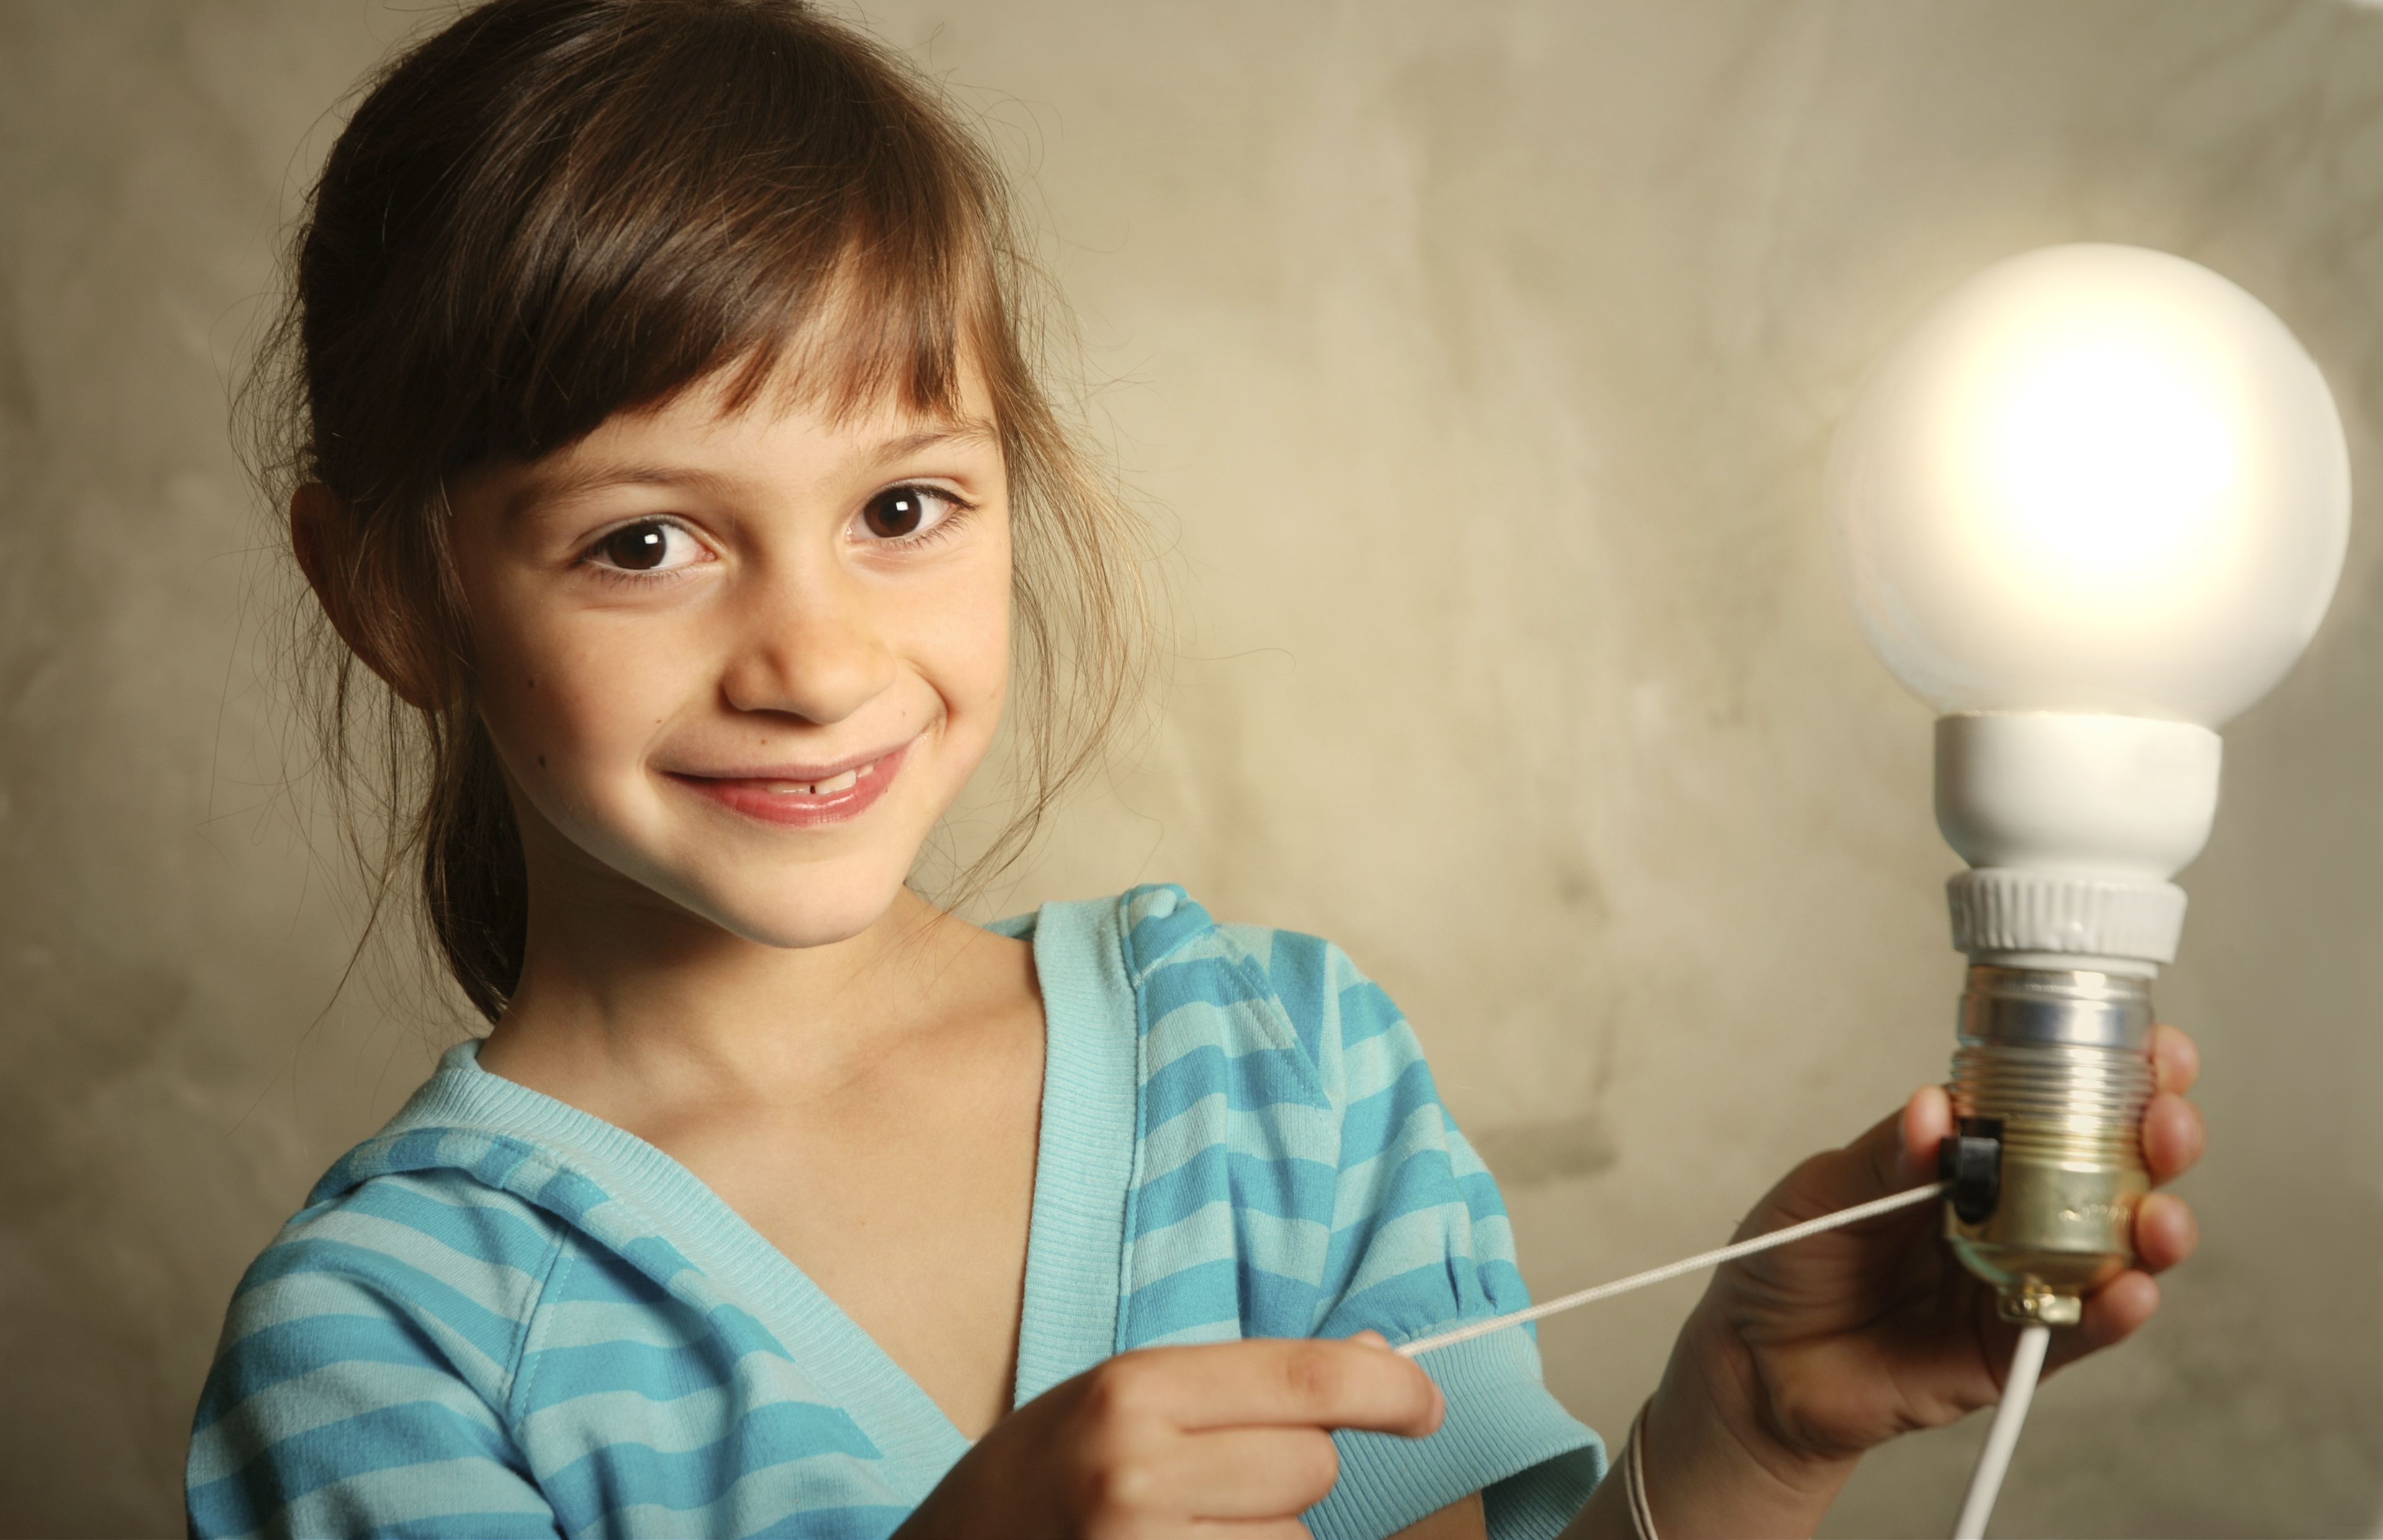 Apagar y encender o dejar encendido: qué debes hacer para consumir menos energía